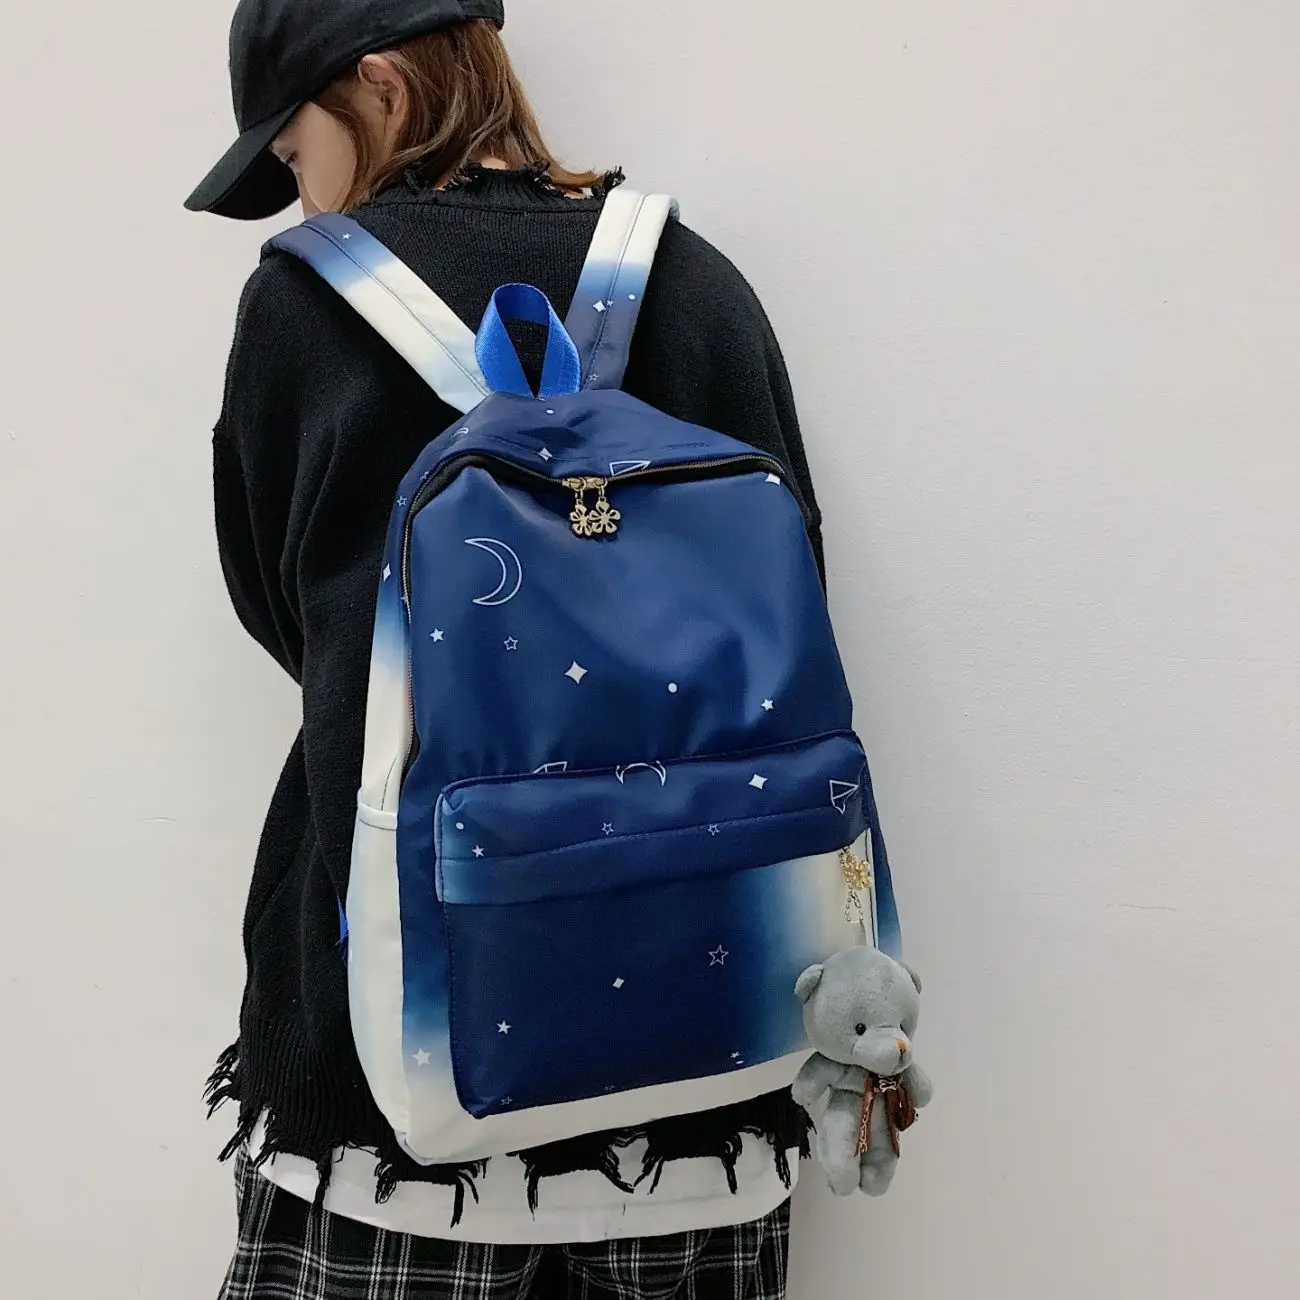 

2022 Star Sky Printed Schoolbags Women's Two Tone Backpack Teenage Girls Waterpoof Bookbags Fashion School Bag Orange Satchel